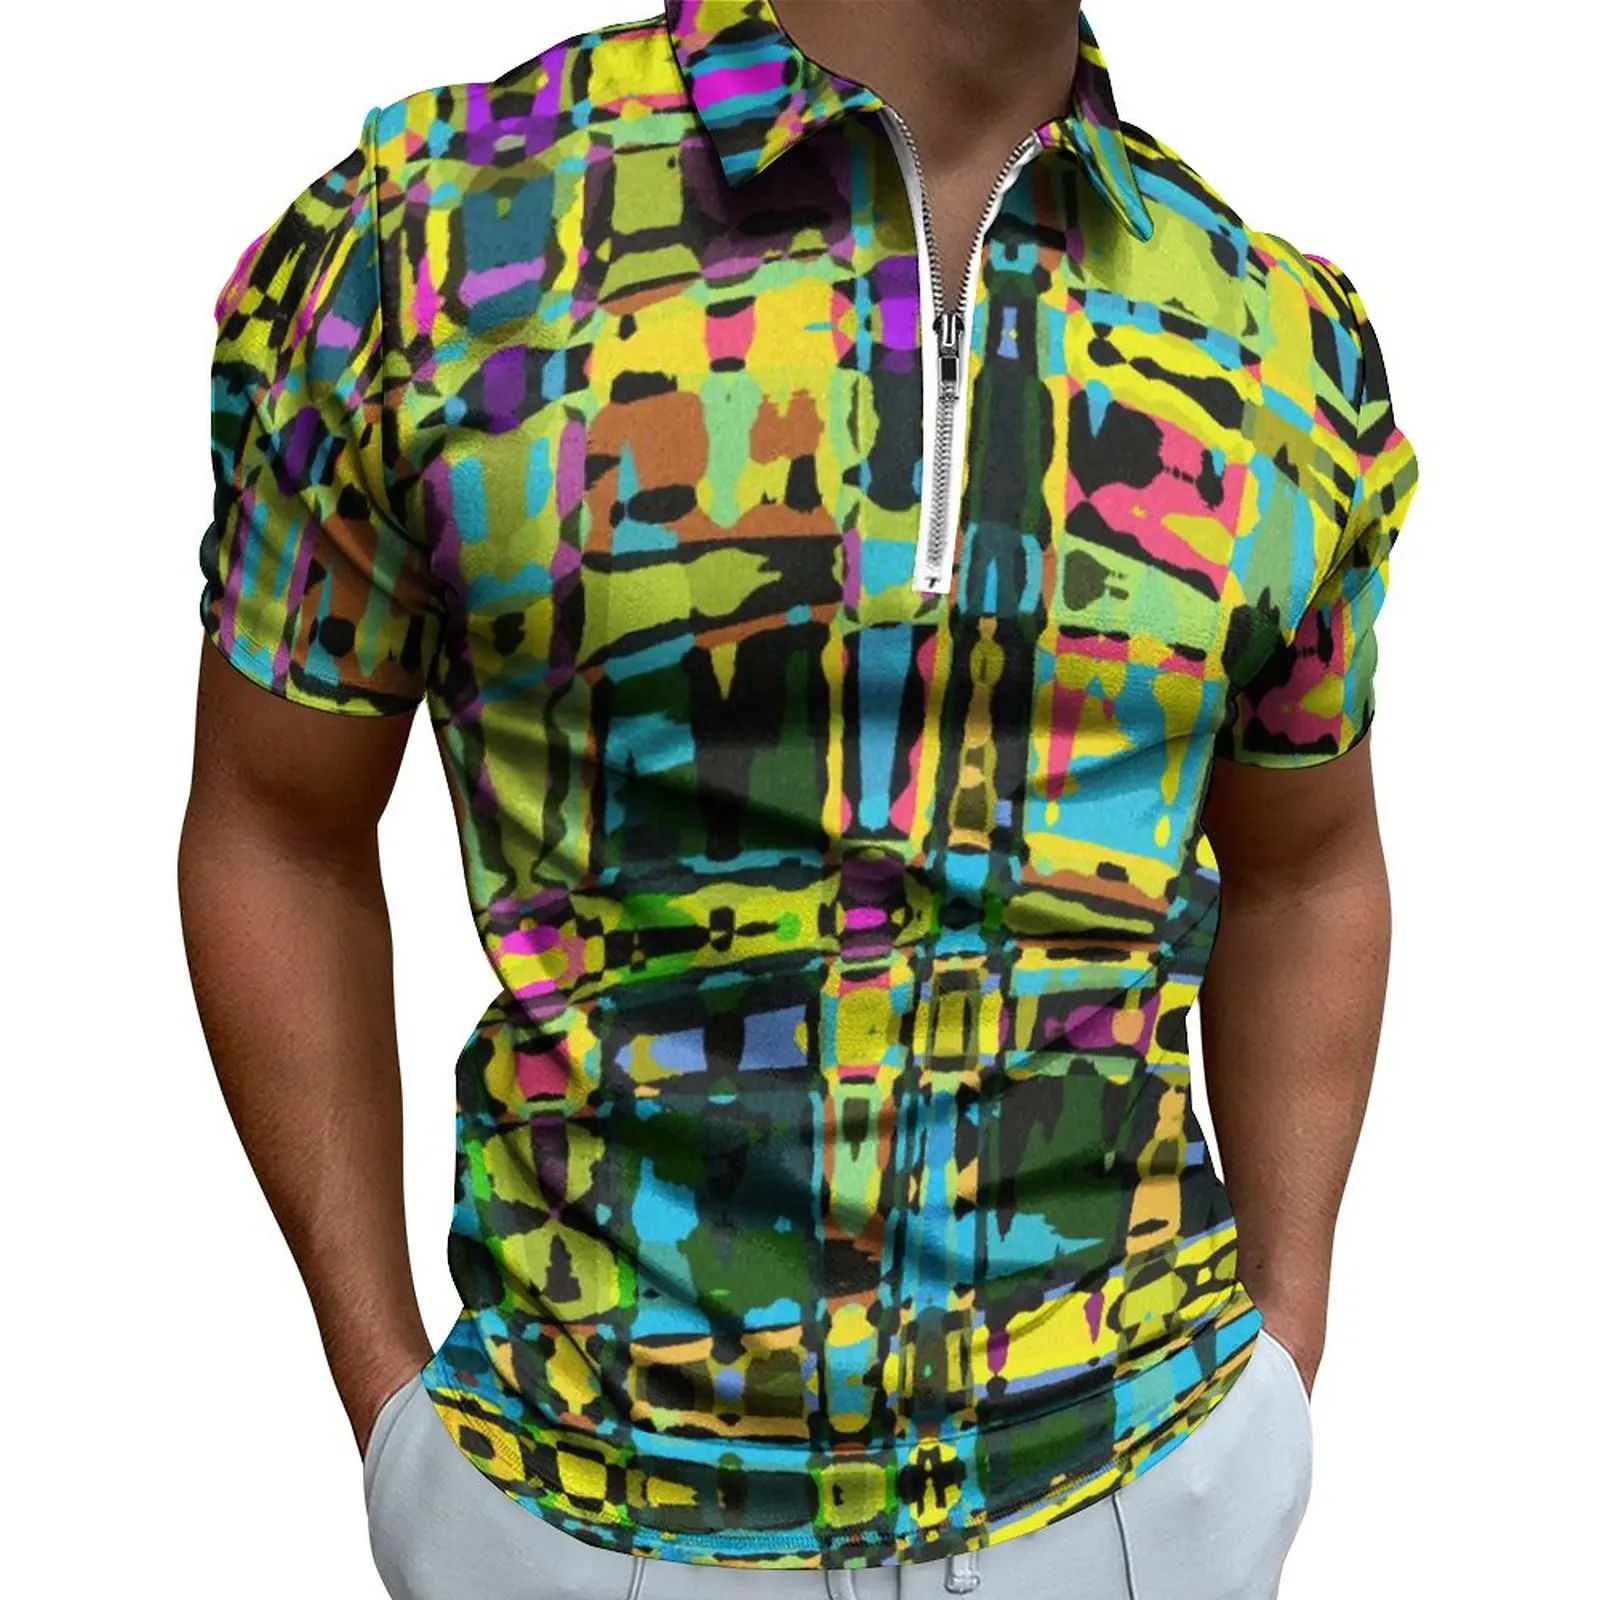 

Рубашка-поло мужская с абстрактным принтом, цветная Этническая Повседневная рубашка, уличная одежда на молнии, топ с коротким рукавом и графическим принтом, большие размеры, на лето